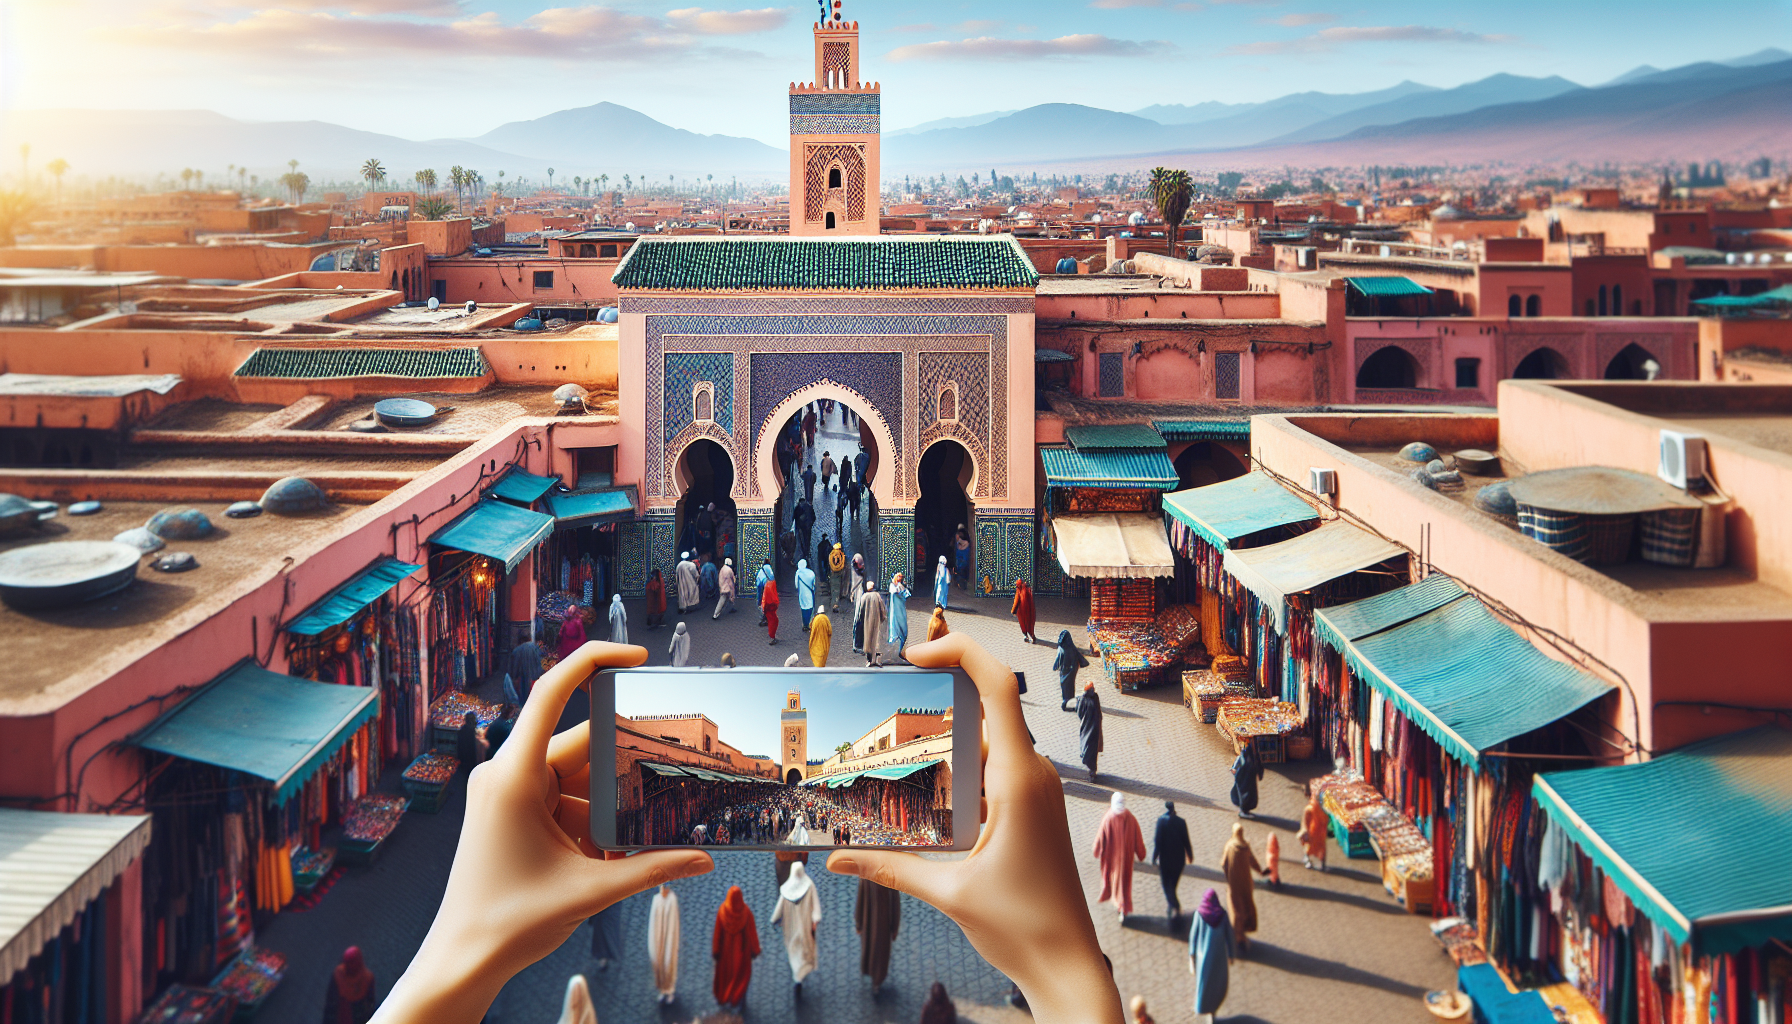 découvrez pourquoi marrakech est la destination incontournable au maroc, entre sa culture fascinante, son architecture unique et son ambiance envoûtante.